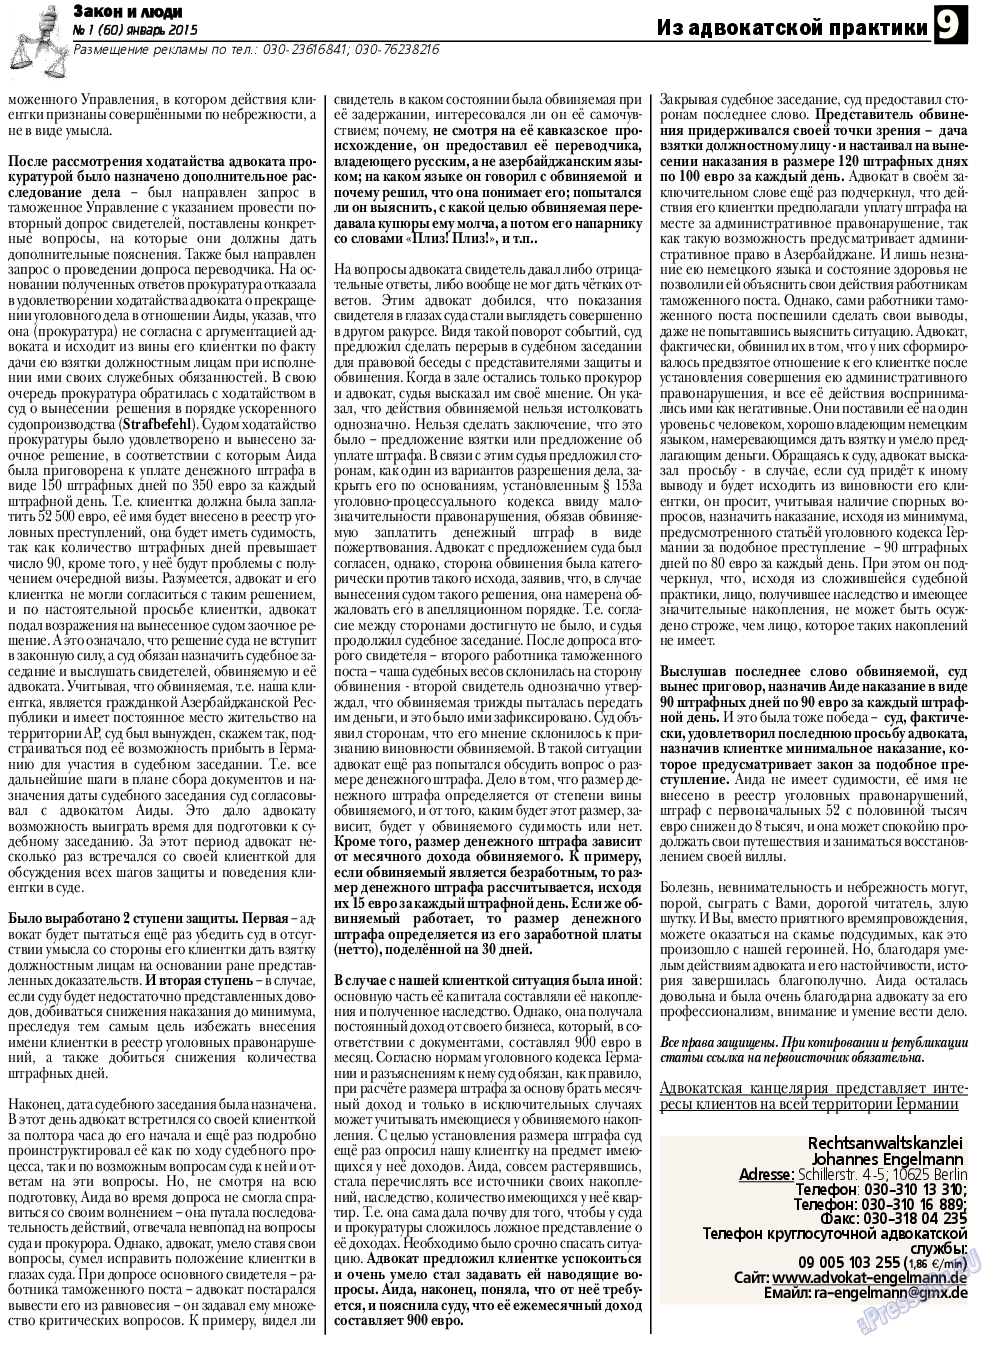 Закон и люди, газета. 2015 №1 стр.9